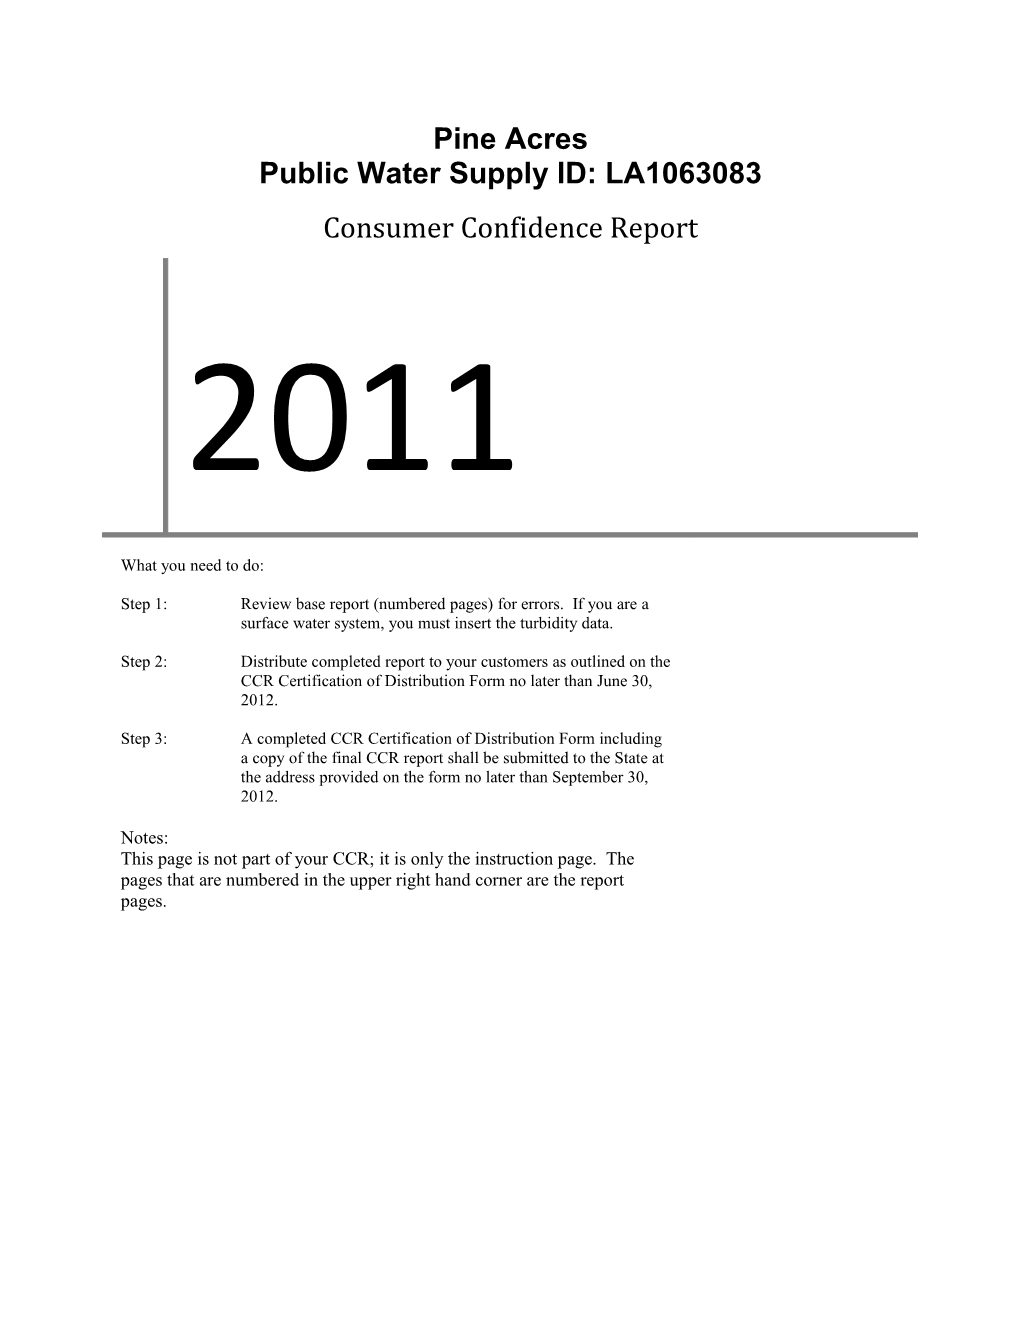 Public Water Supply ID: LA1063083